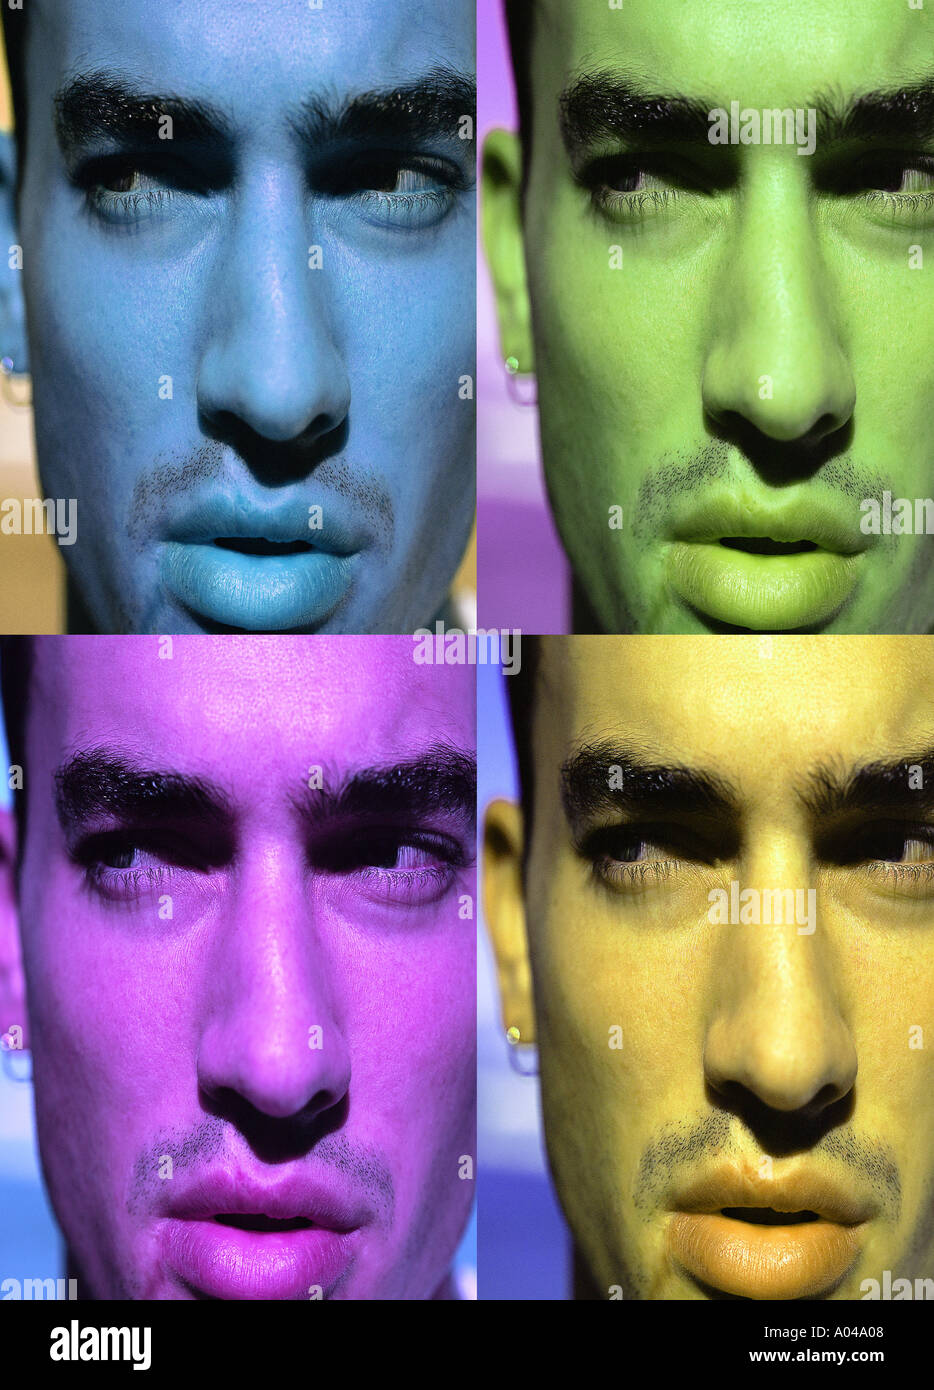 Quatre portraits colorés de près le visage d'un homme ( Digital composite ) Banque D'Images